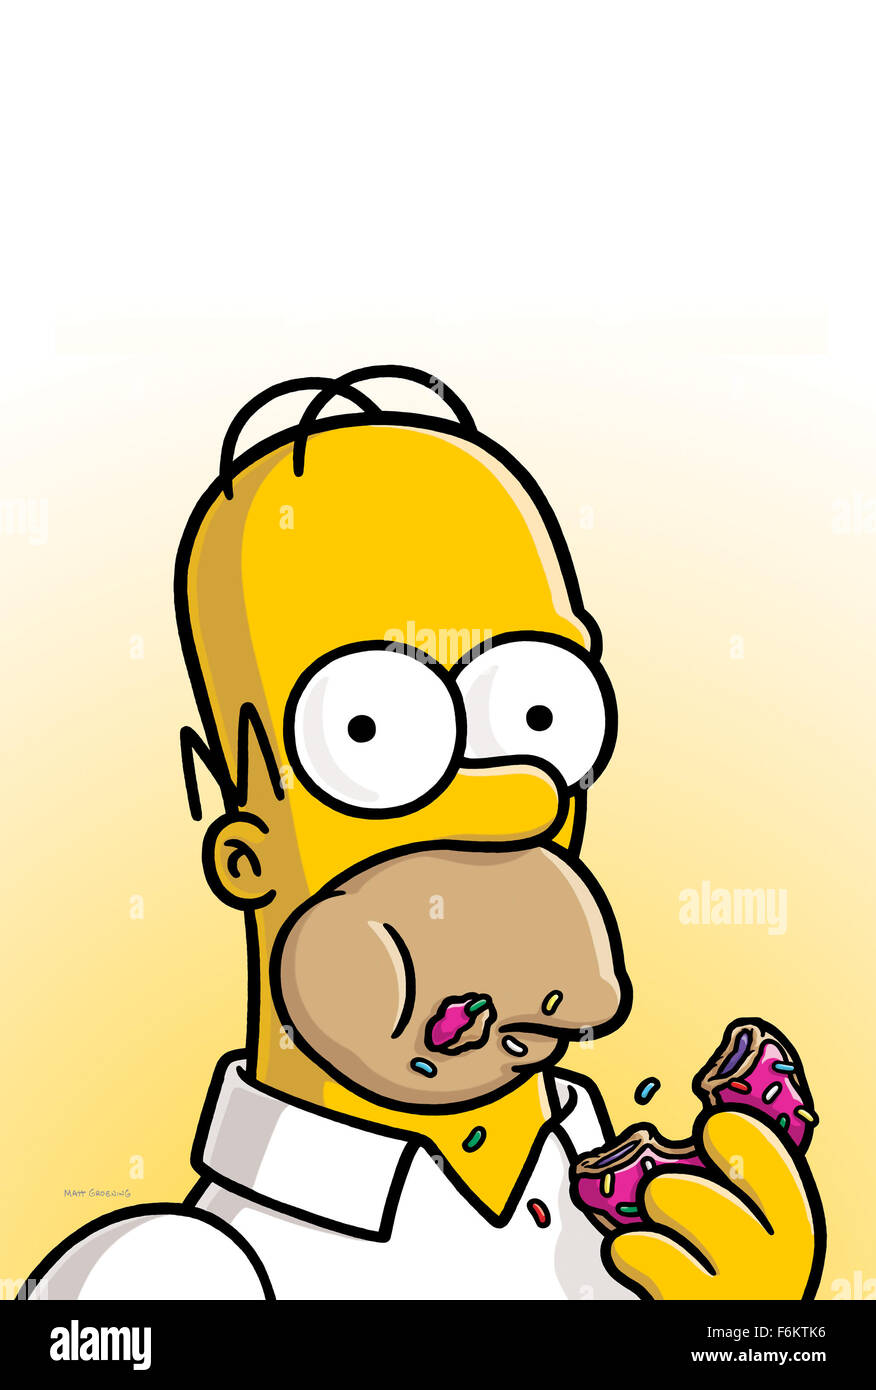 Homer simpson immagini e fotografie stock ad alta risoluzione - Alamy